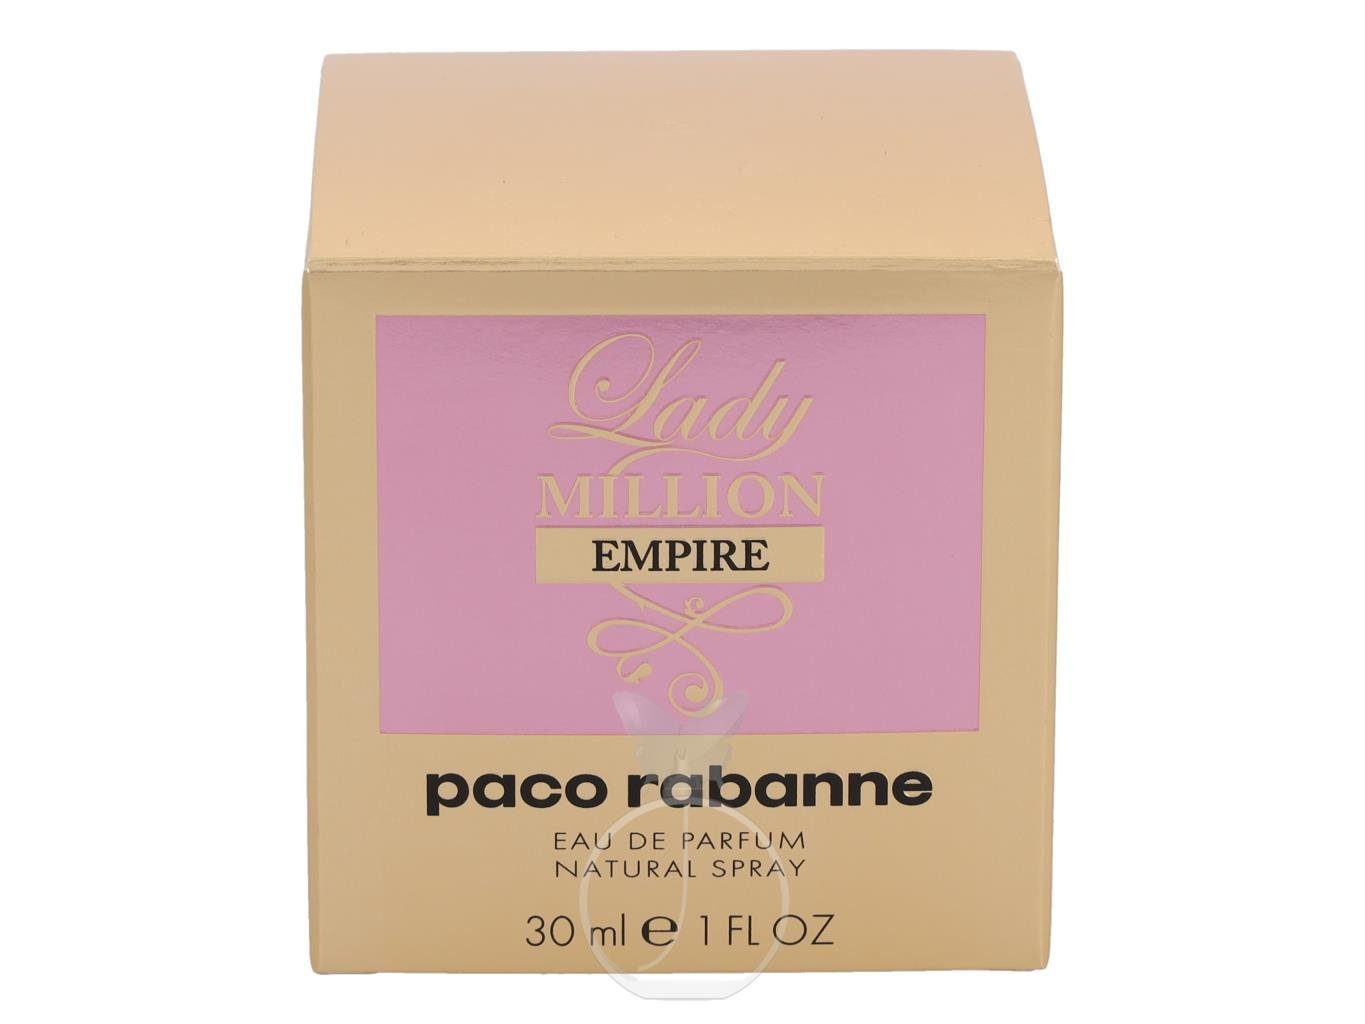 paco rabanne Extrait Parfum paco de 30 Million ml Empire rabanne Lady Parfum Eau